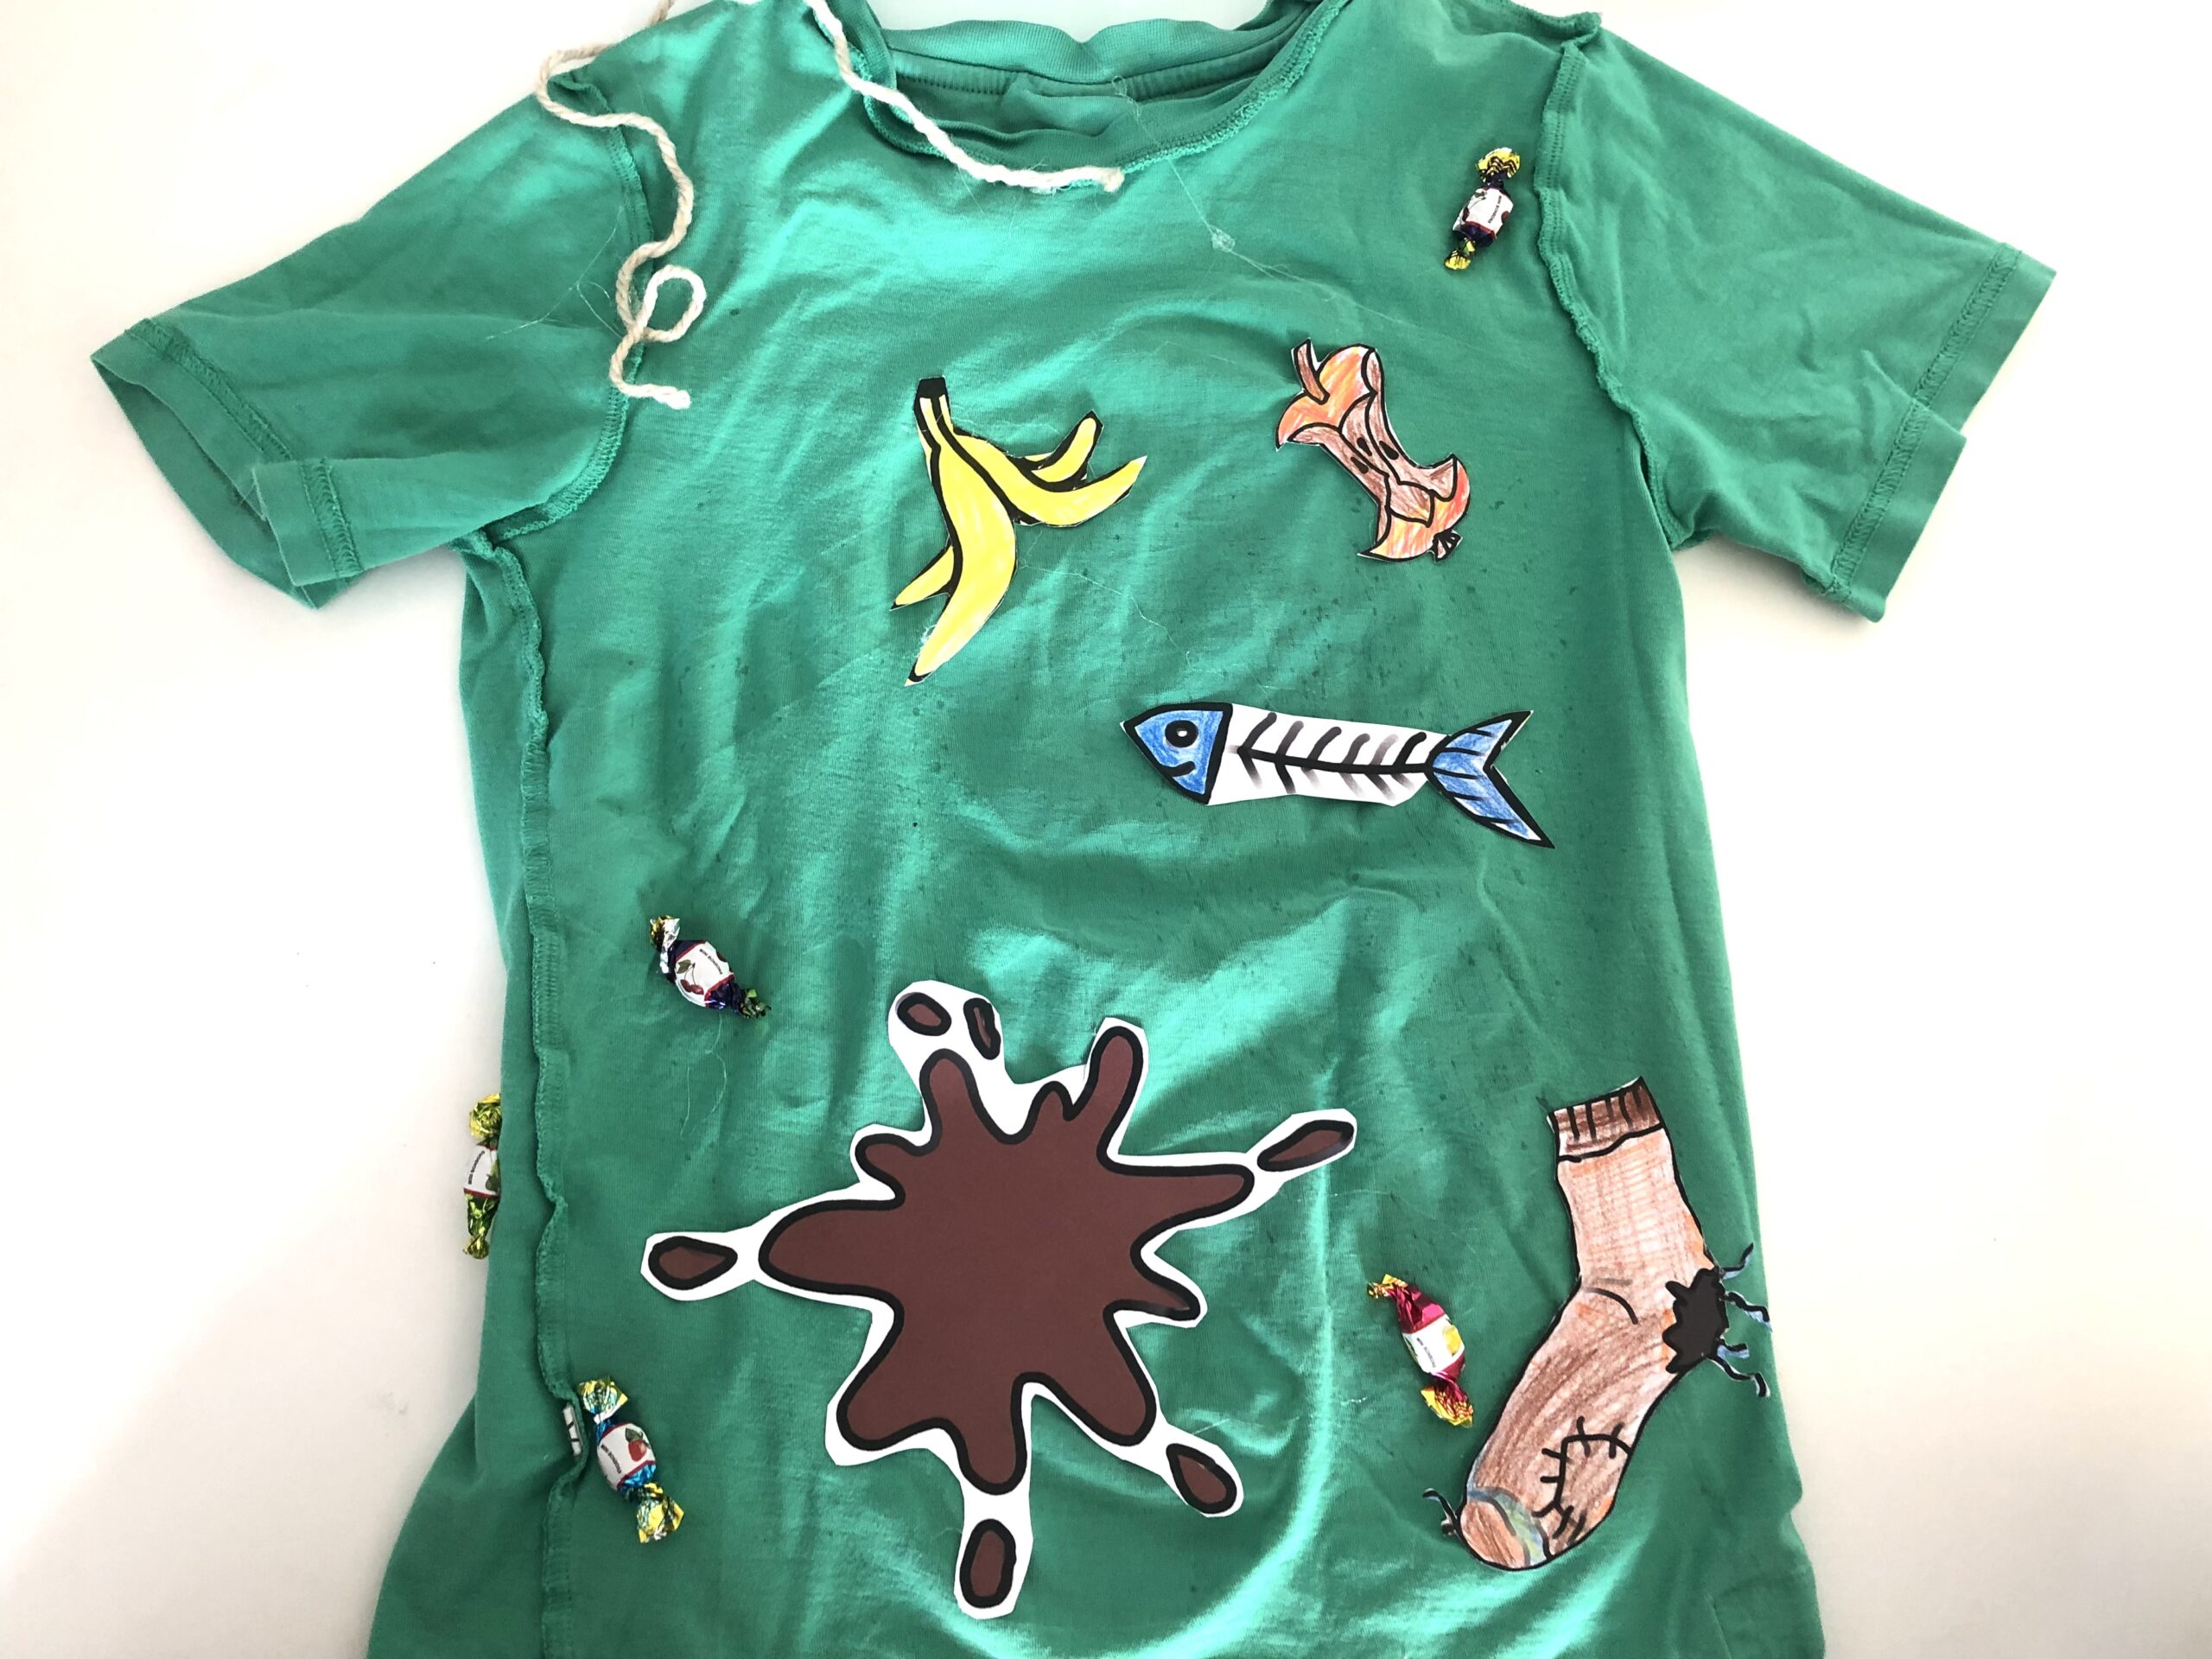 Bild zum Schritt 11 für das Bastel- und DIY-Abenteuer für Kinder: 'Dekoriert nun das T-Shirt mit einem Wollfaden und mit Bonbons,...'